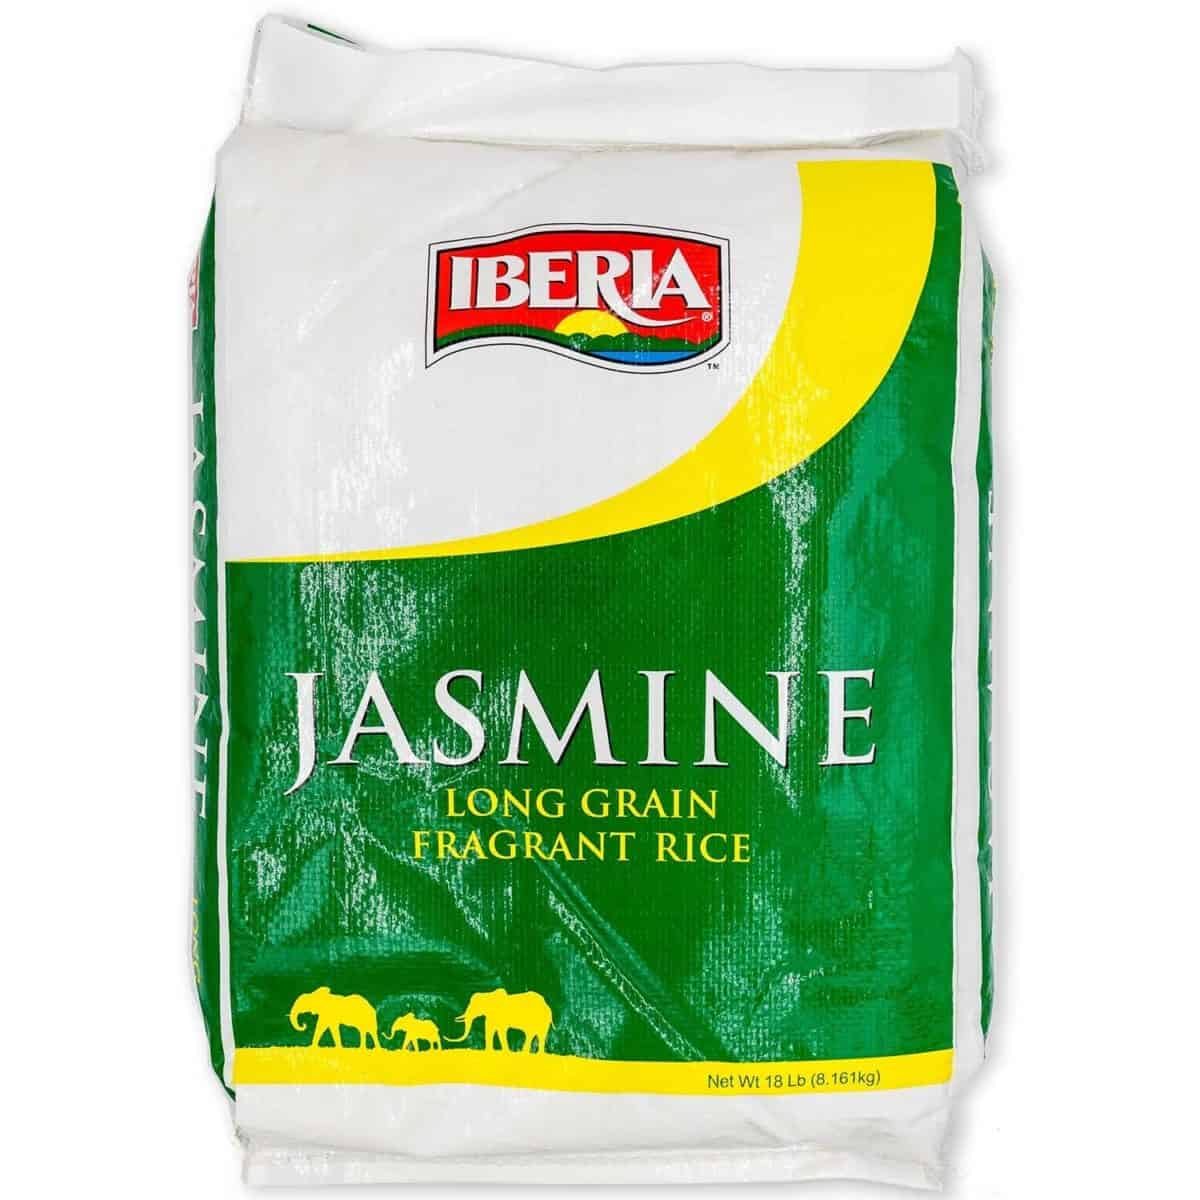 Arroz de jasmim como substituto do arroz basmati